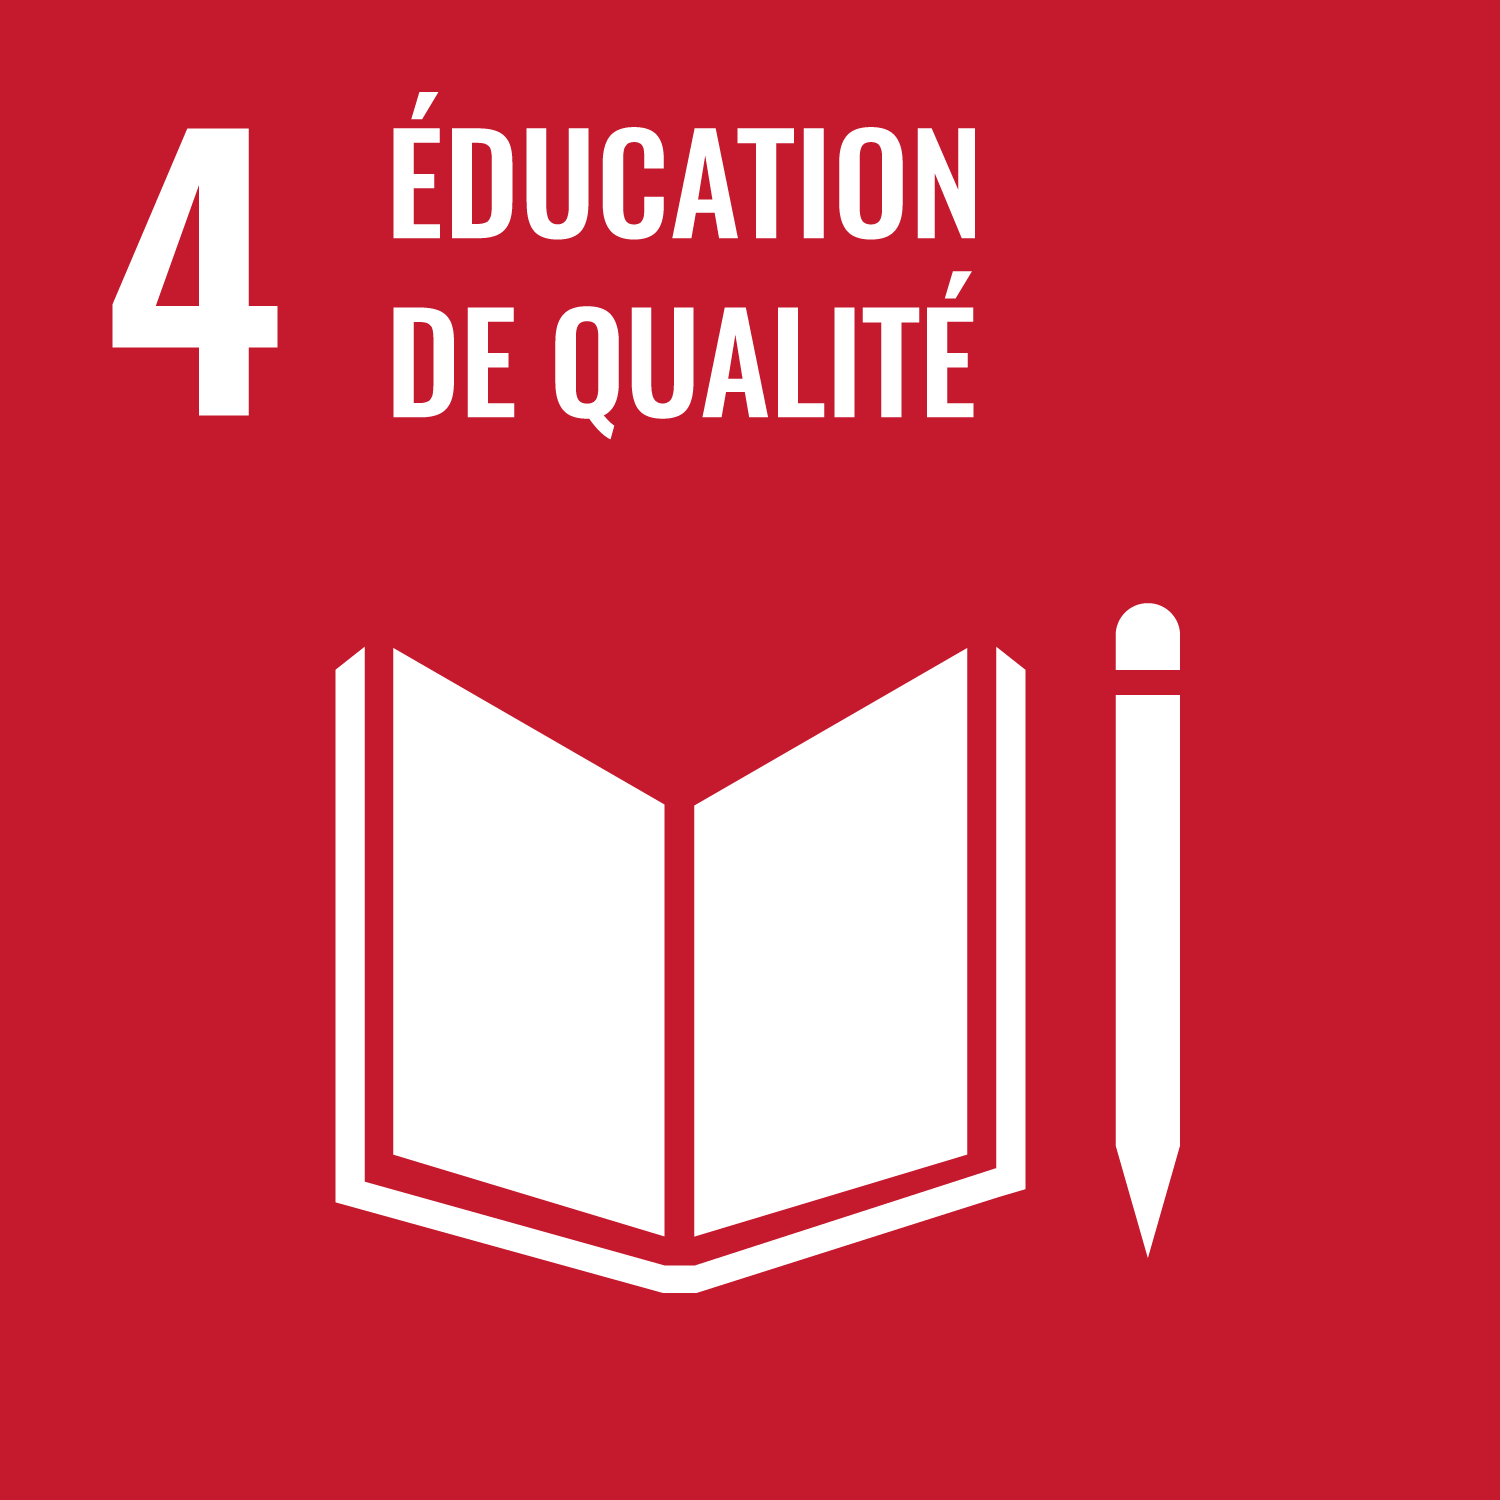 Objectif 4 - Assurer à tous une éducation équitable, inclusive et de qualité et des possibilités d’apprentissage tout au long de la vie